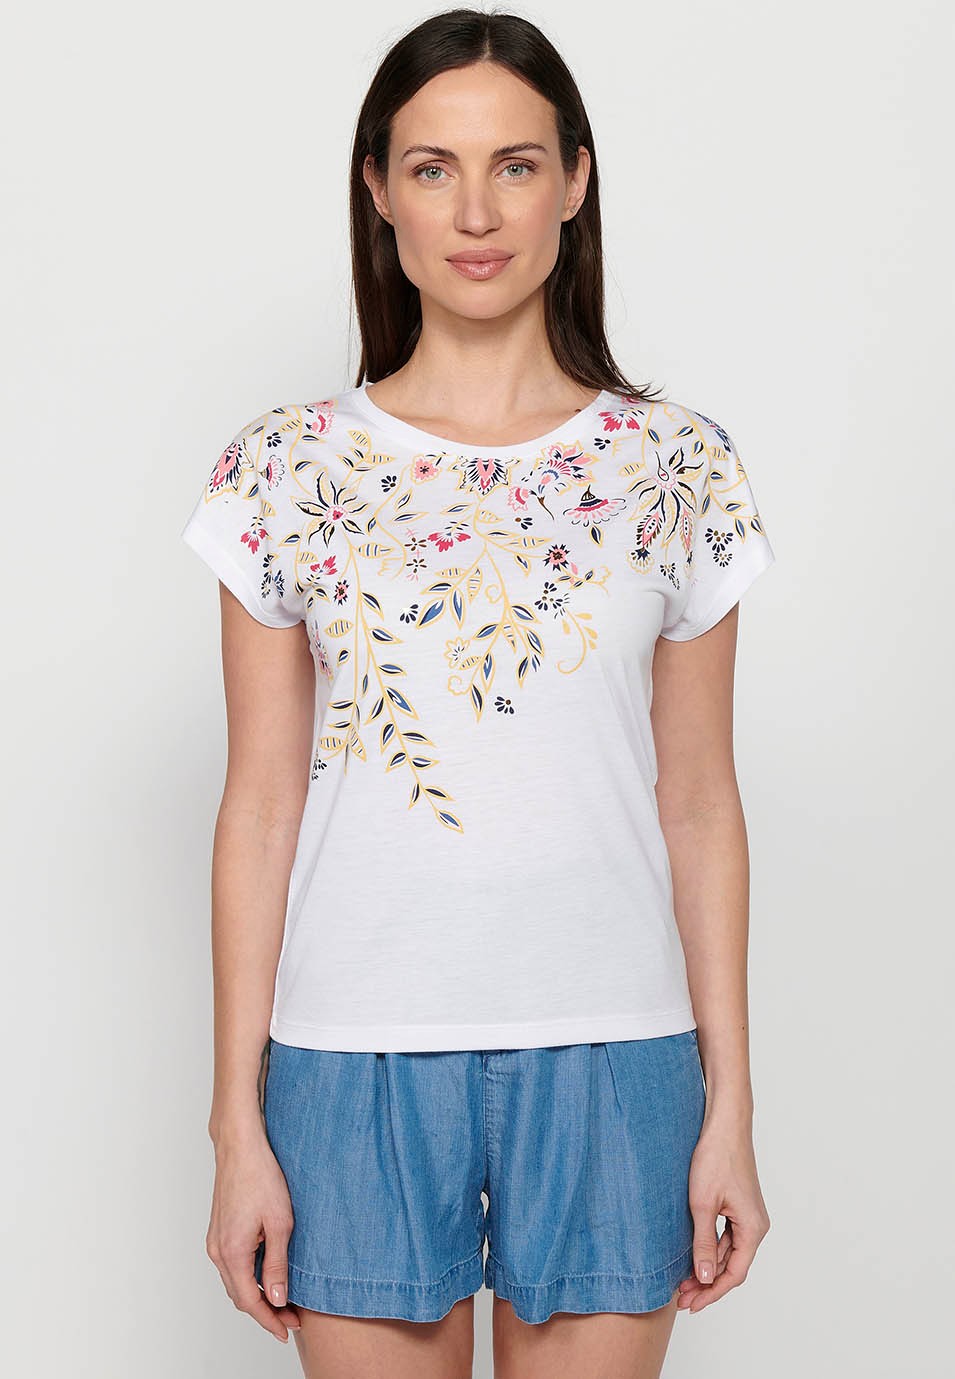 Camiseta Top de manga corta de algodón de Cuello redondo con Bordado floral delantero color Blanco para Mujer